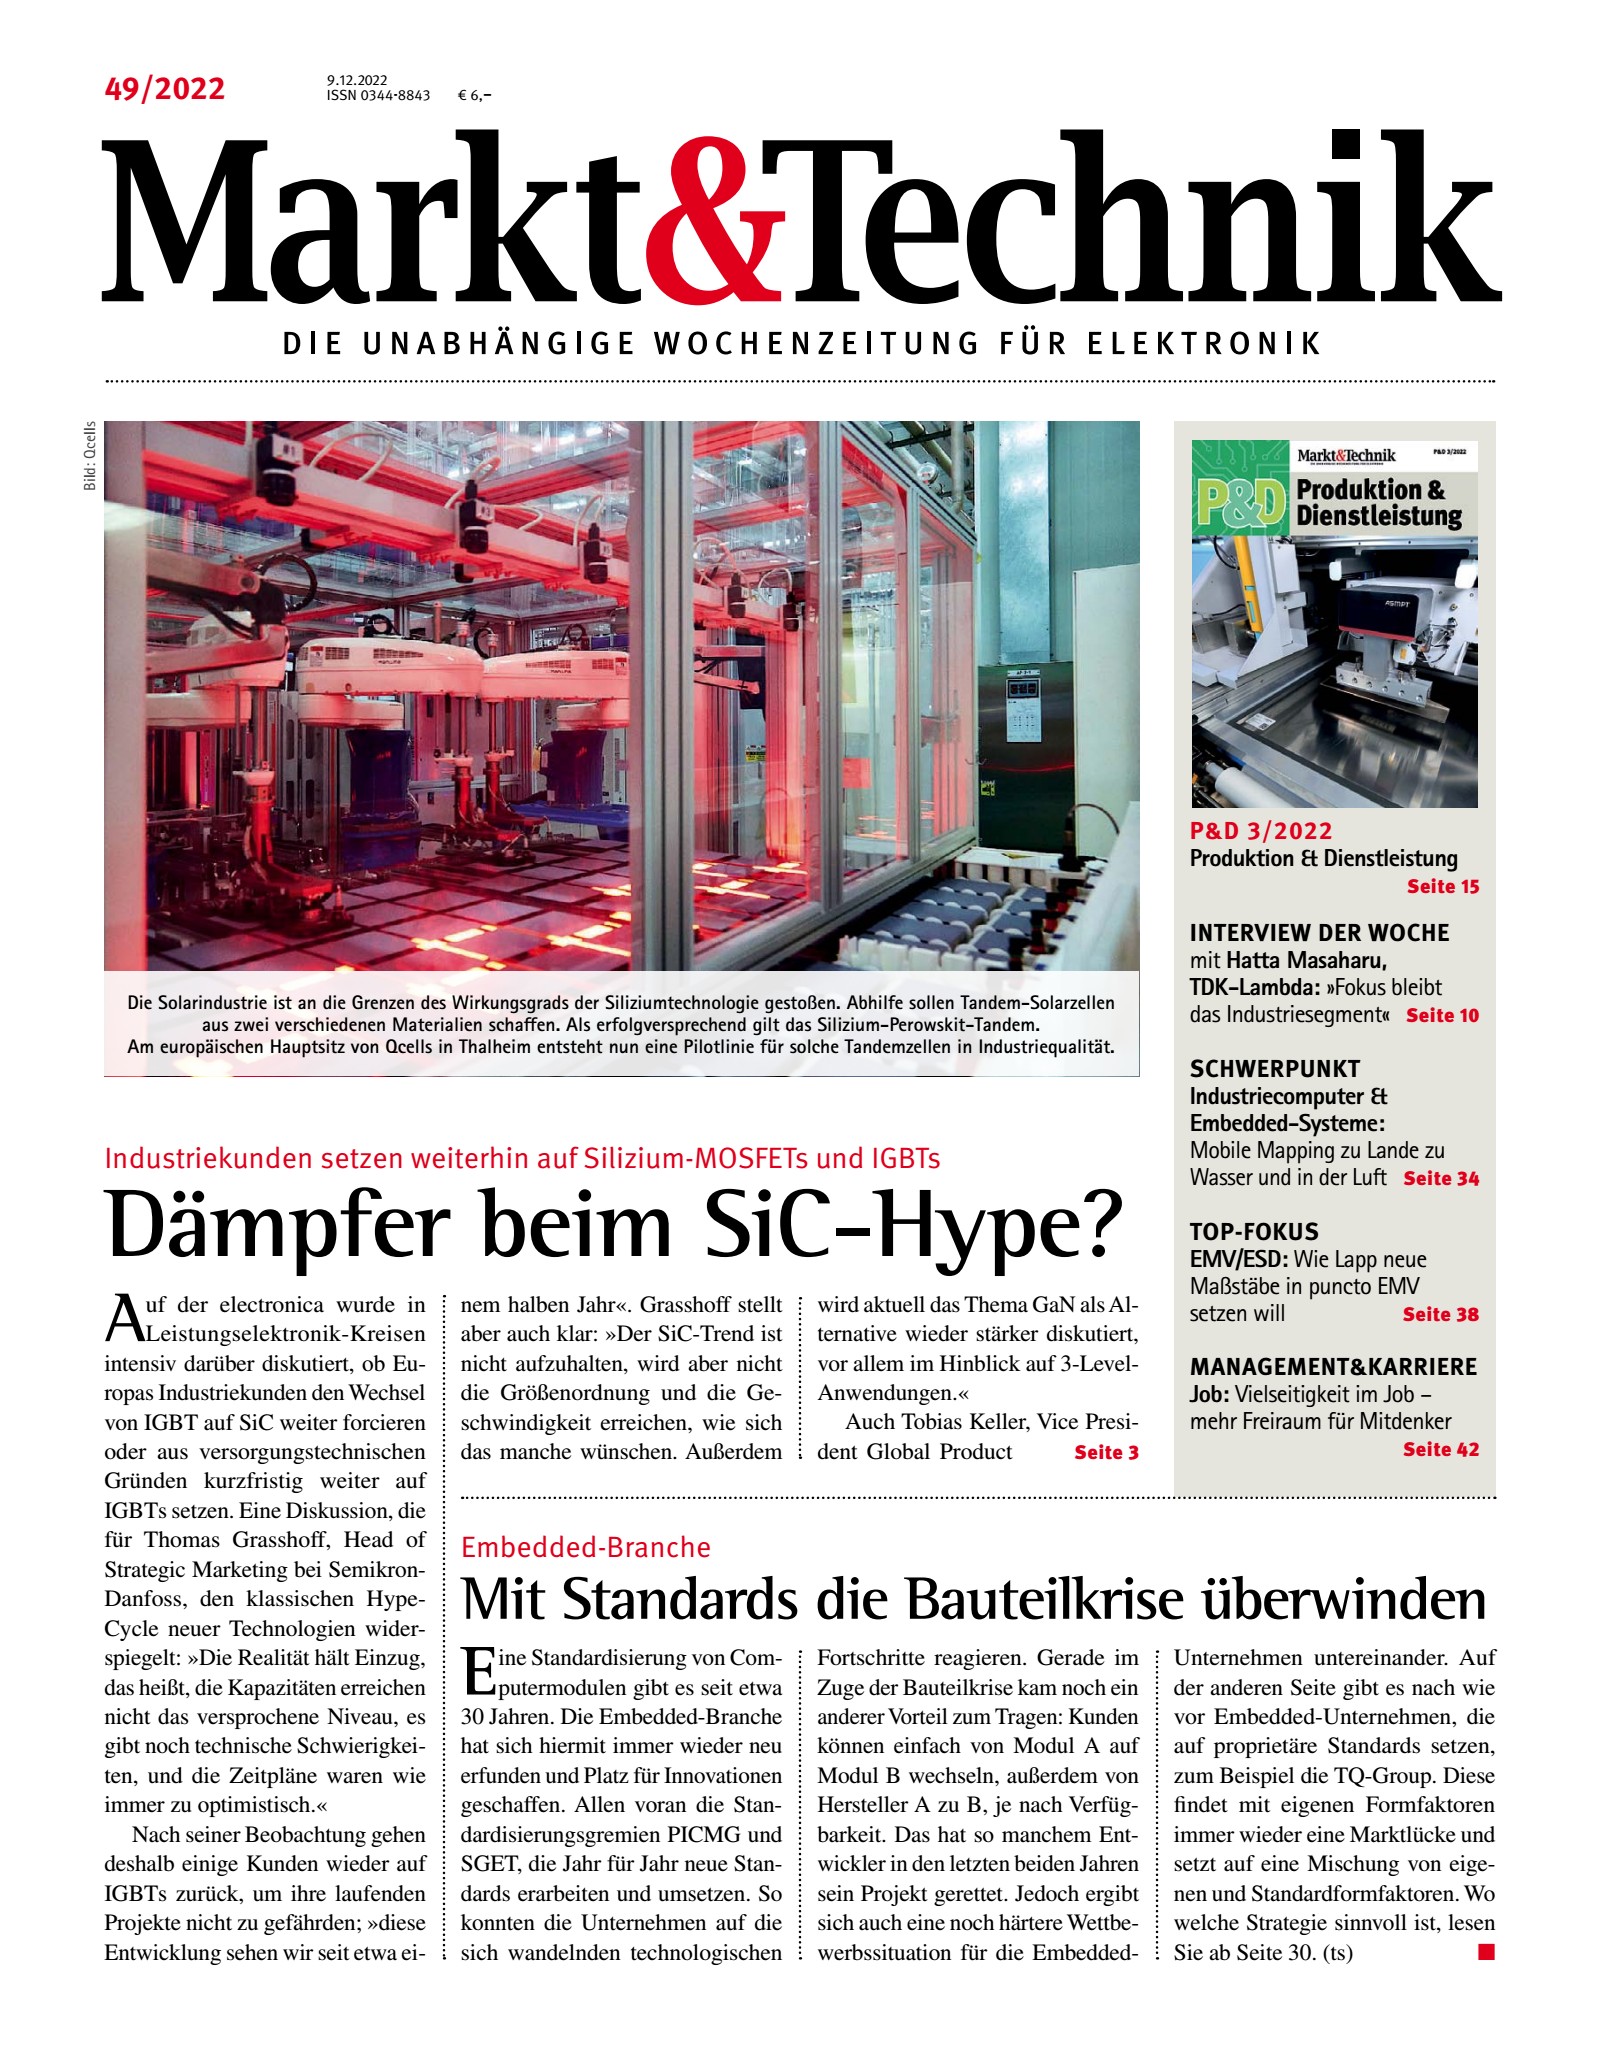 Markt&Technik 49/2022 Digital